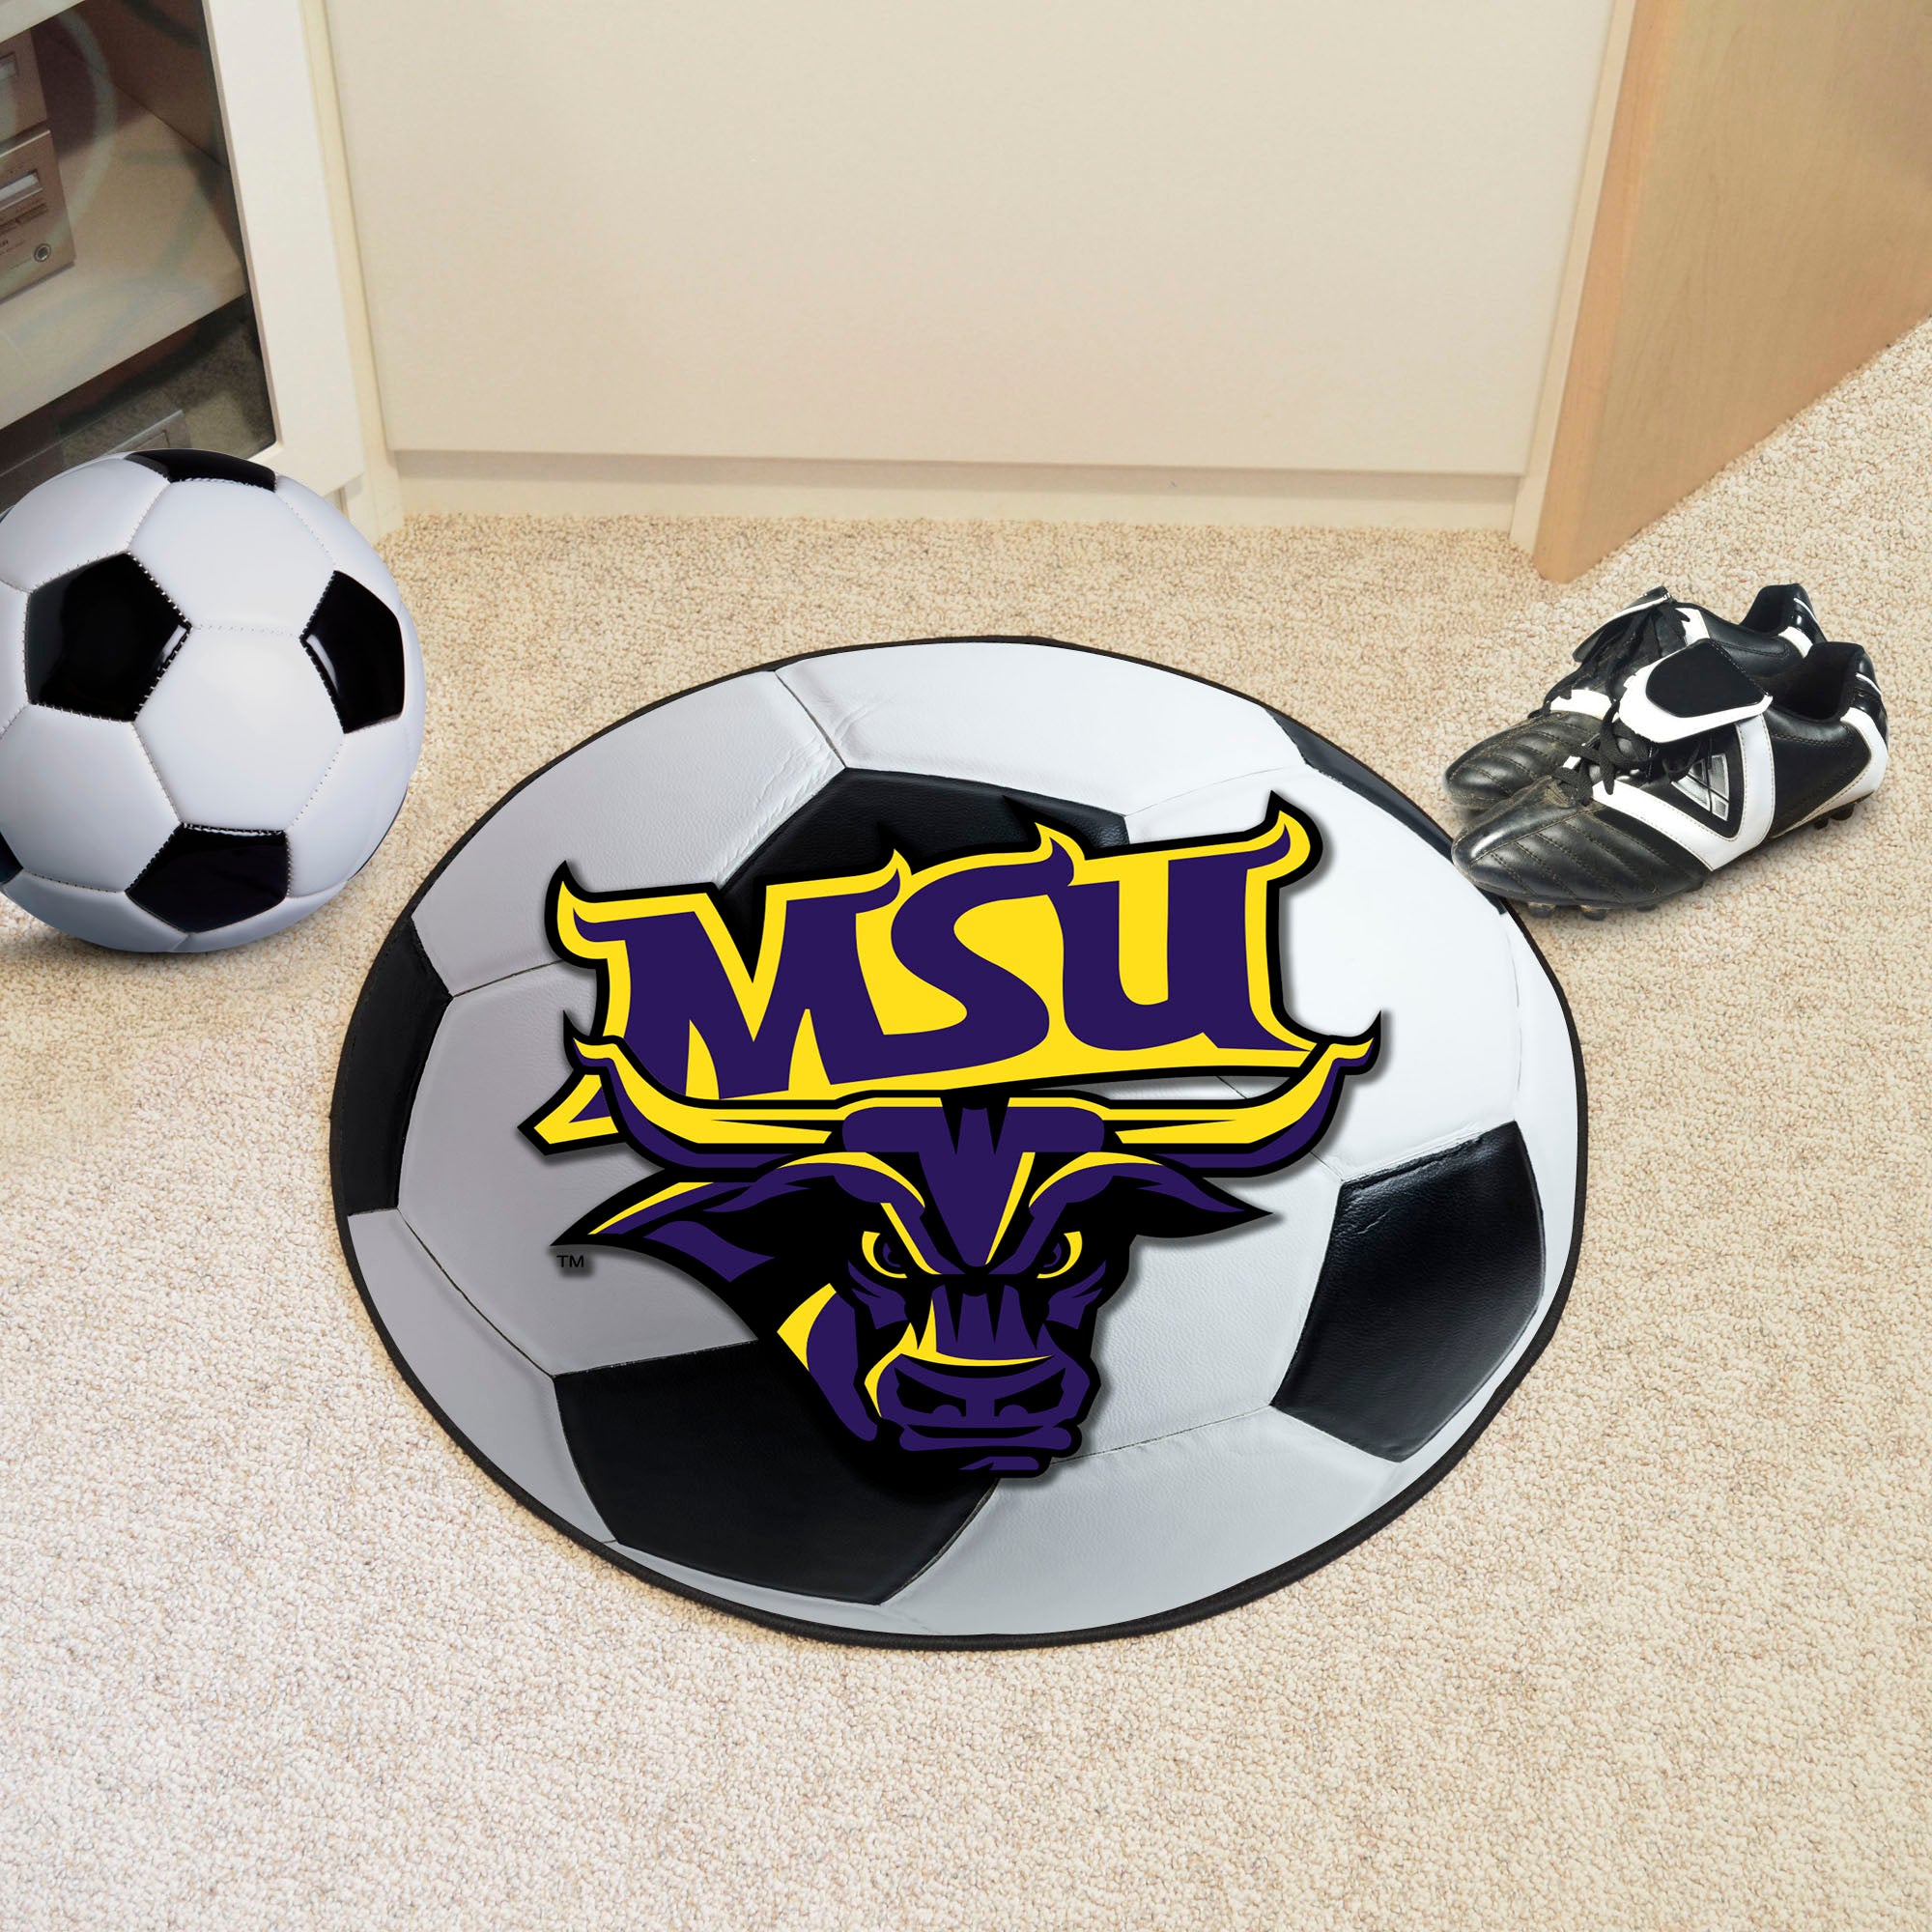 FANMATS, Minnesota State University - Mankato Soccer Ball Rug - 27in. Diameter